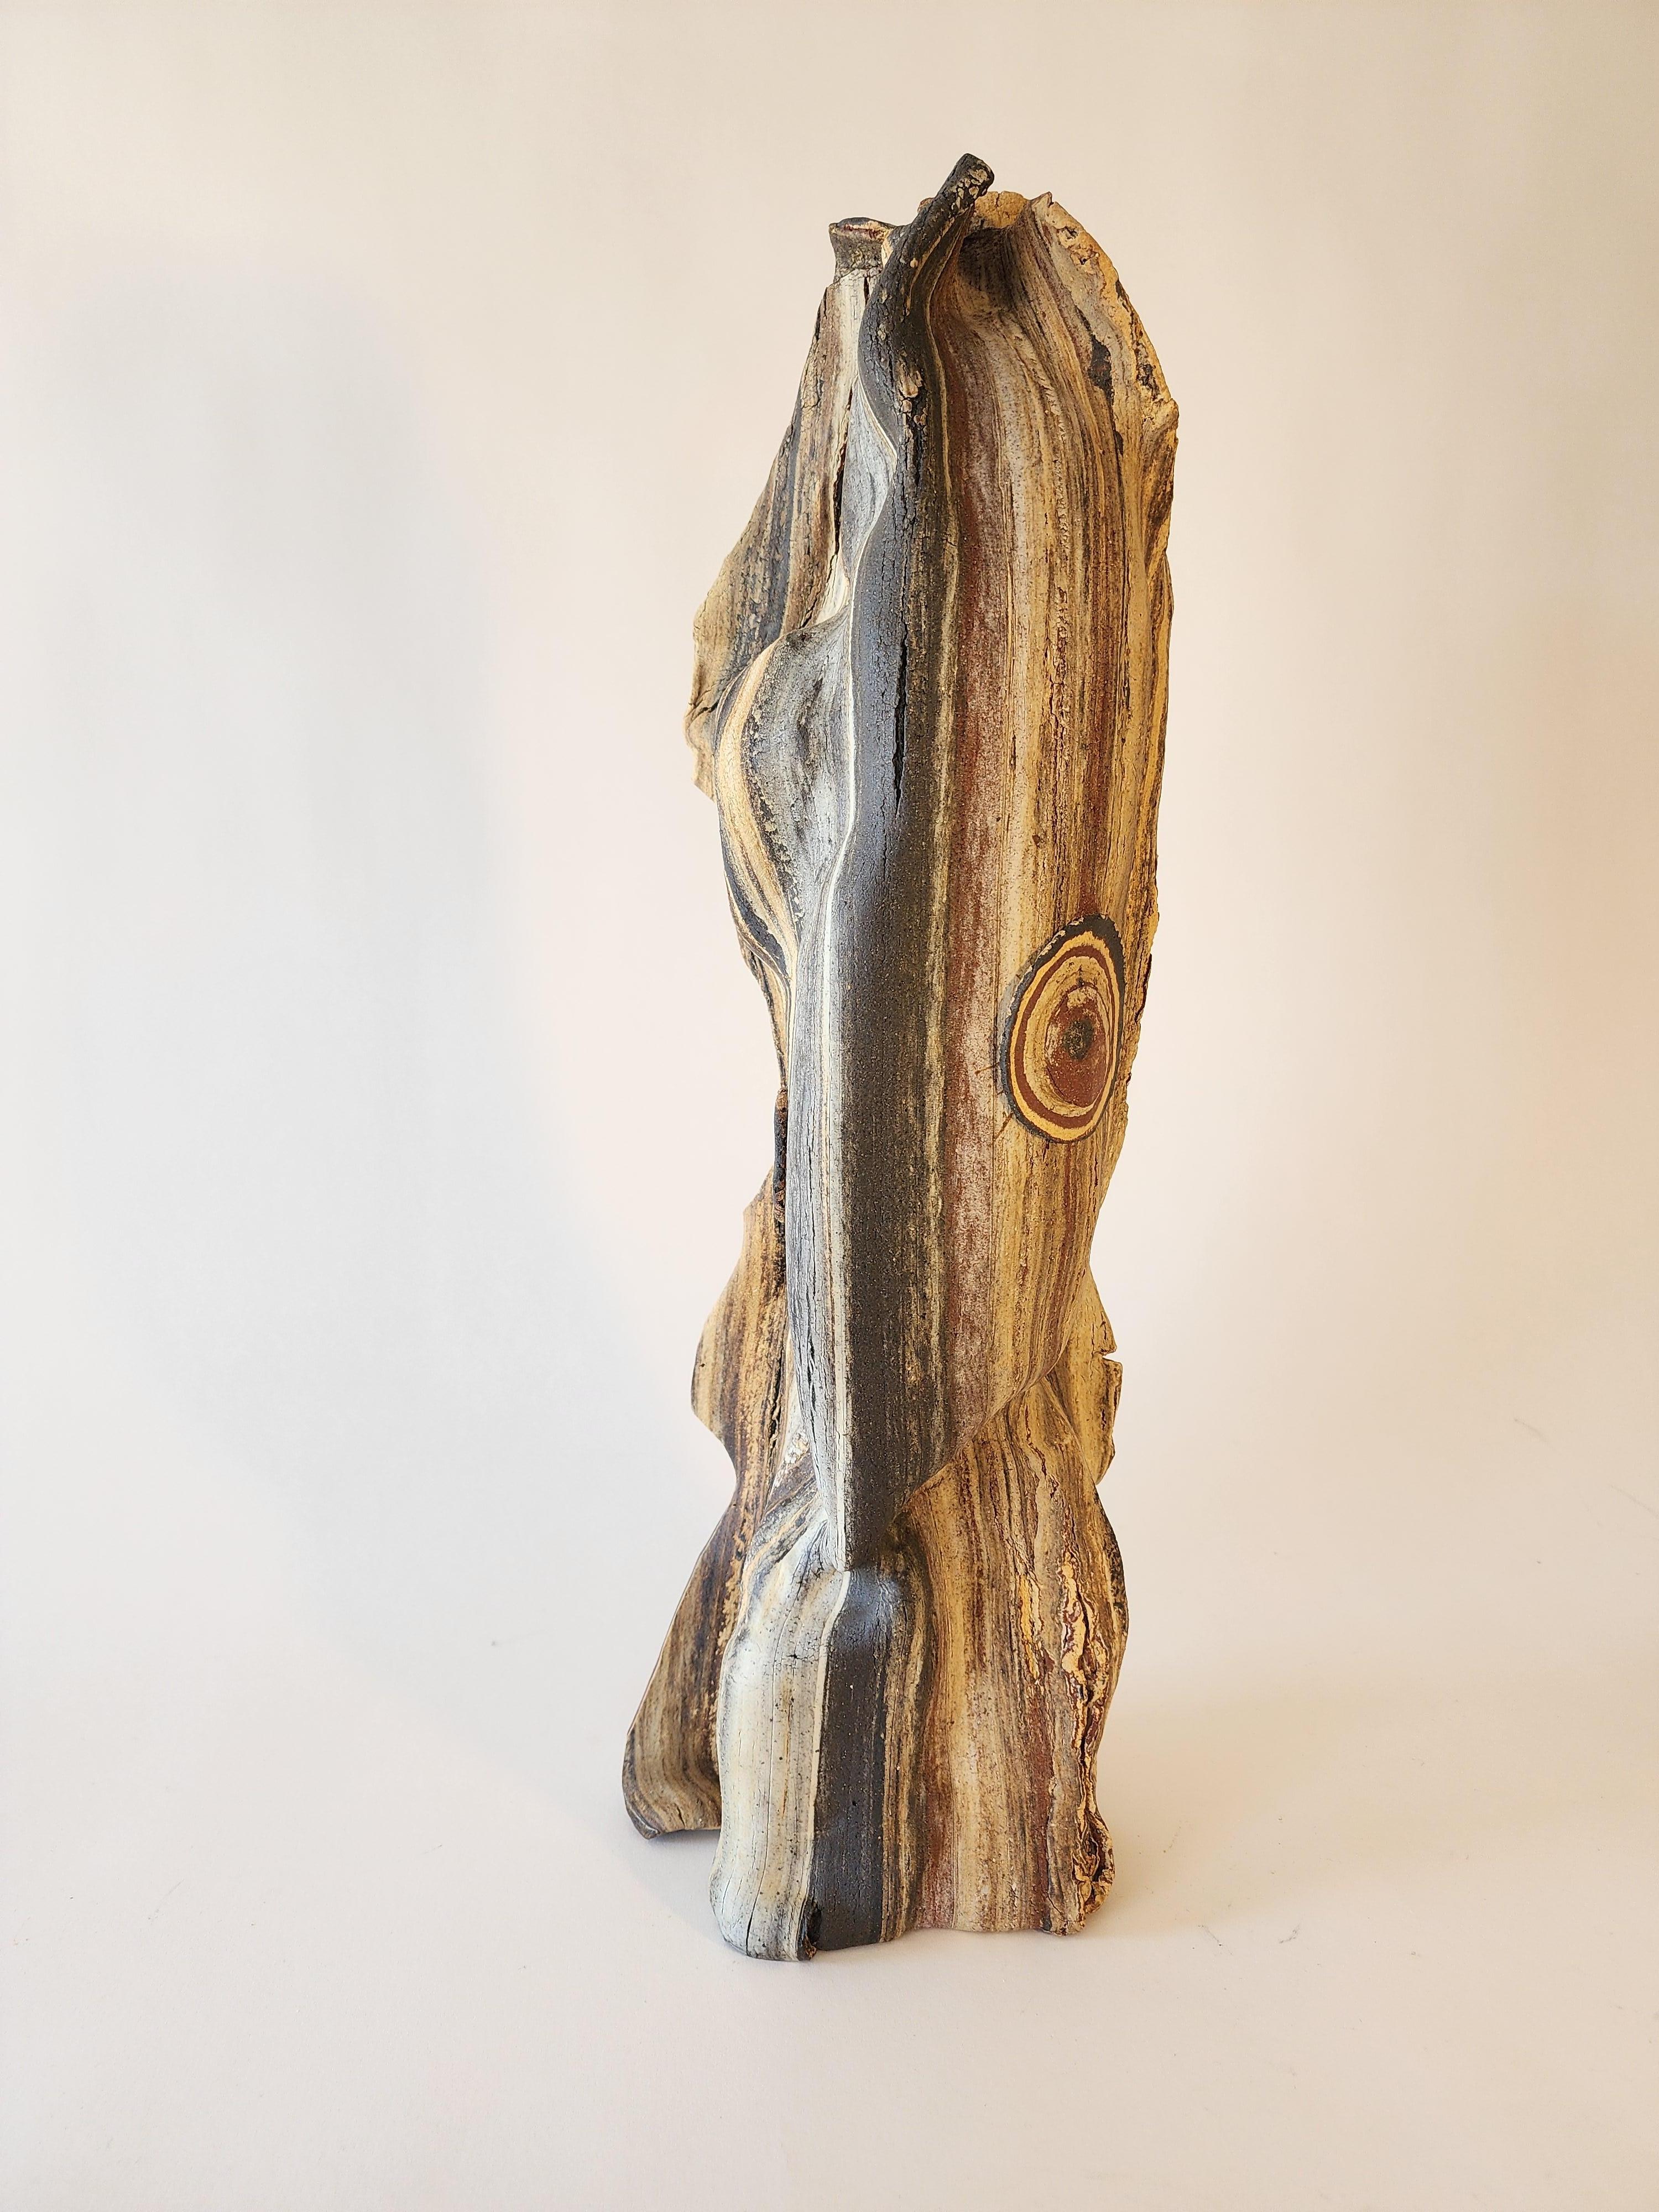 La sculpture en céramique de corps d'argile combinés, les processus uniques développés par Anna Bush Crews, s'appuient sur les qualités inhérentes au matériau, la façon dont il se lisse ou non, la façon dont il s'étire ou se brise dans des actions